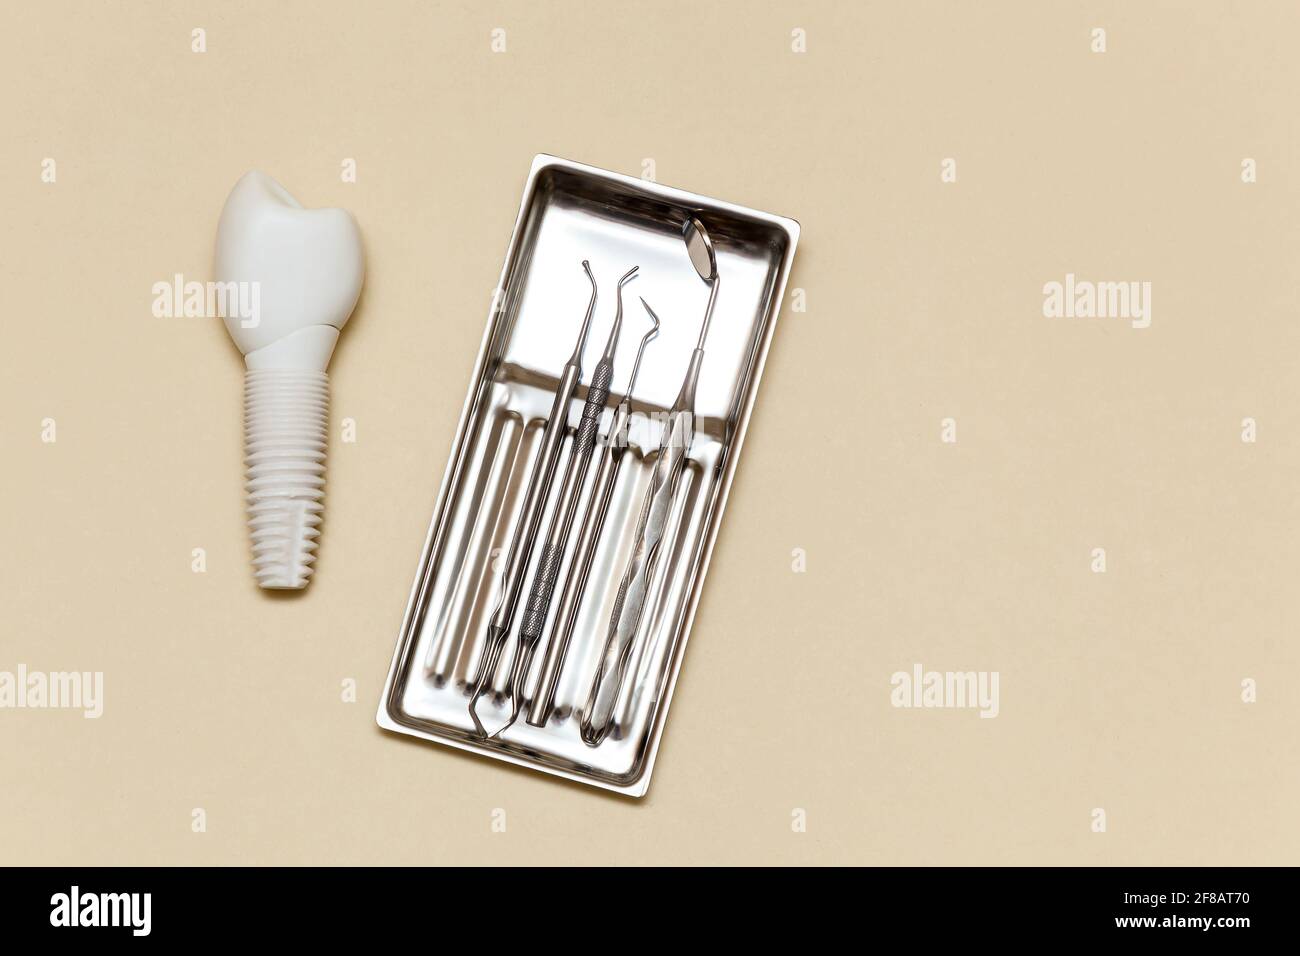 Impianto dentale, utensili dentali su fondo beige. Modello di impianto dentale del dente artificiale. Concetto di odontoiatria e strumenti medici. Foto con Foto Stock